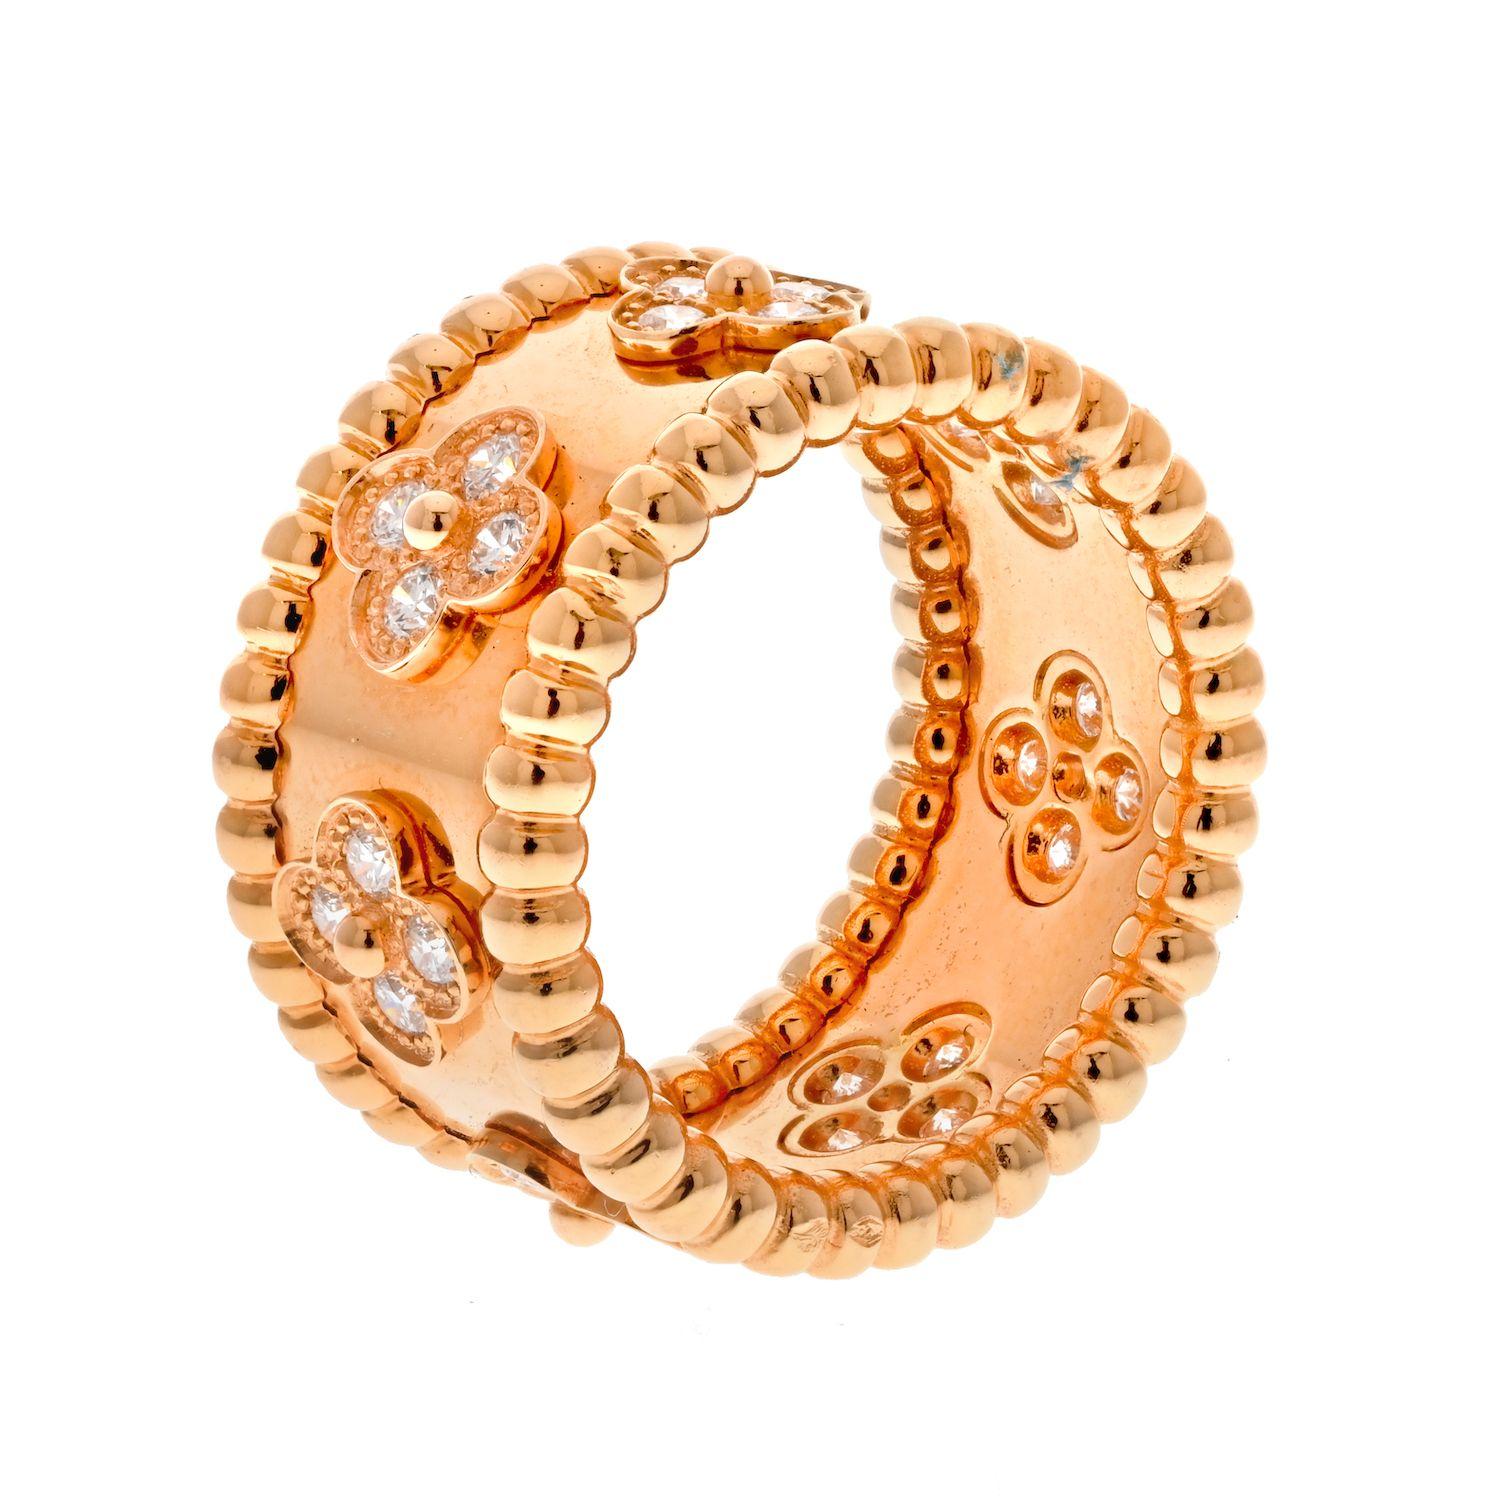 La bague Perlee de Van Cleef & Arpels est un bijou intemporel. Fabriquée en or jaune 18 carats et sertie de diamants éblouissants, cette bague ne manquera pas de faire parler d'elle. Avec son design classique, il est sûr d'être un bijou précieux